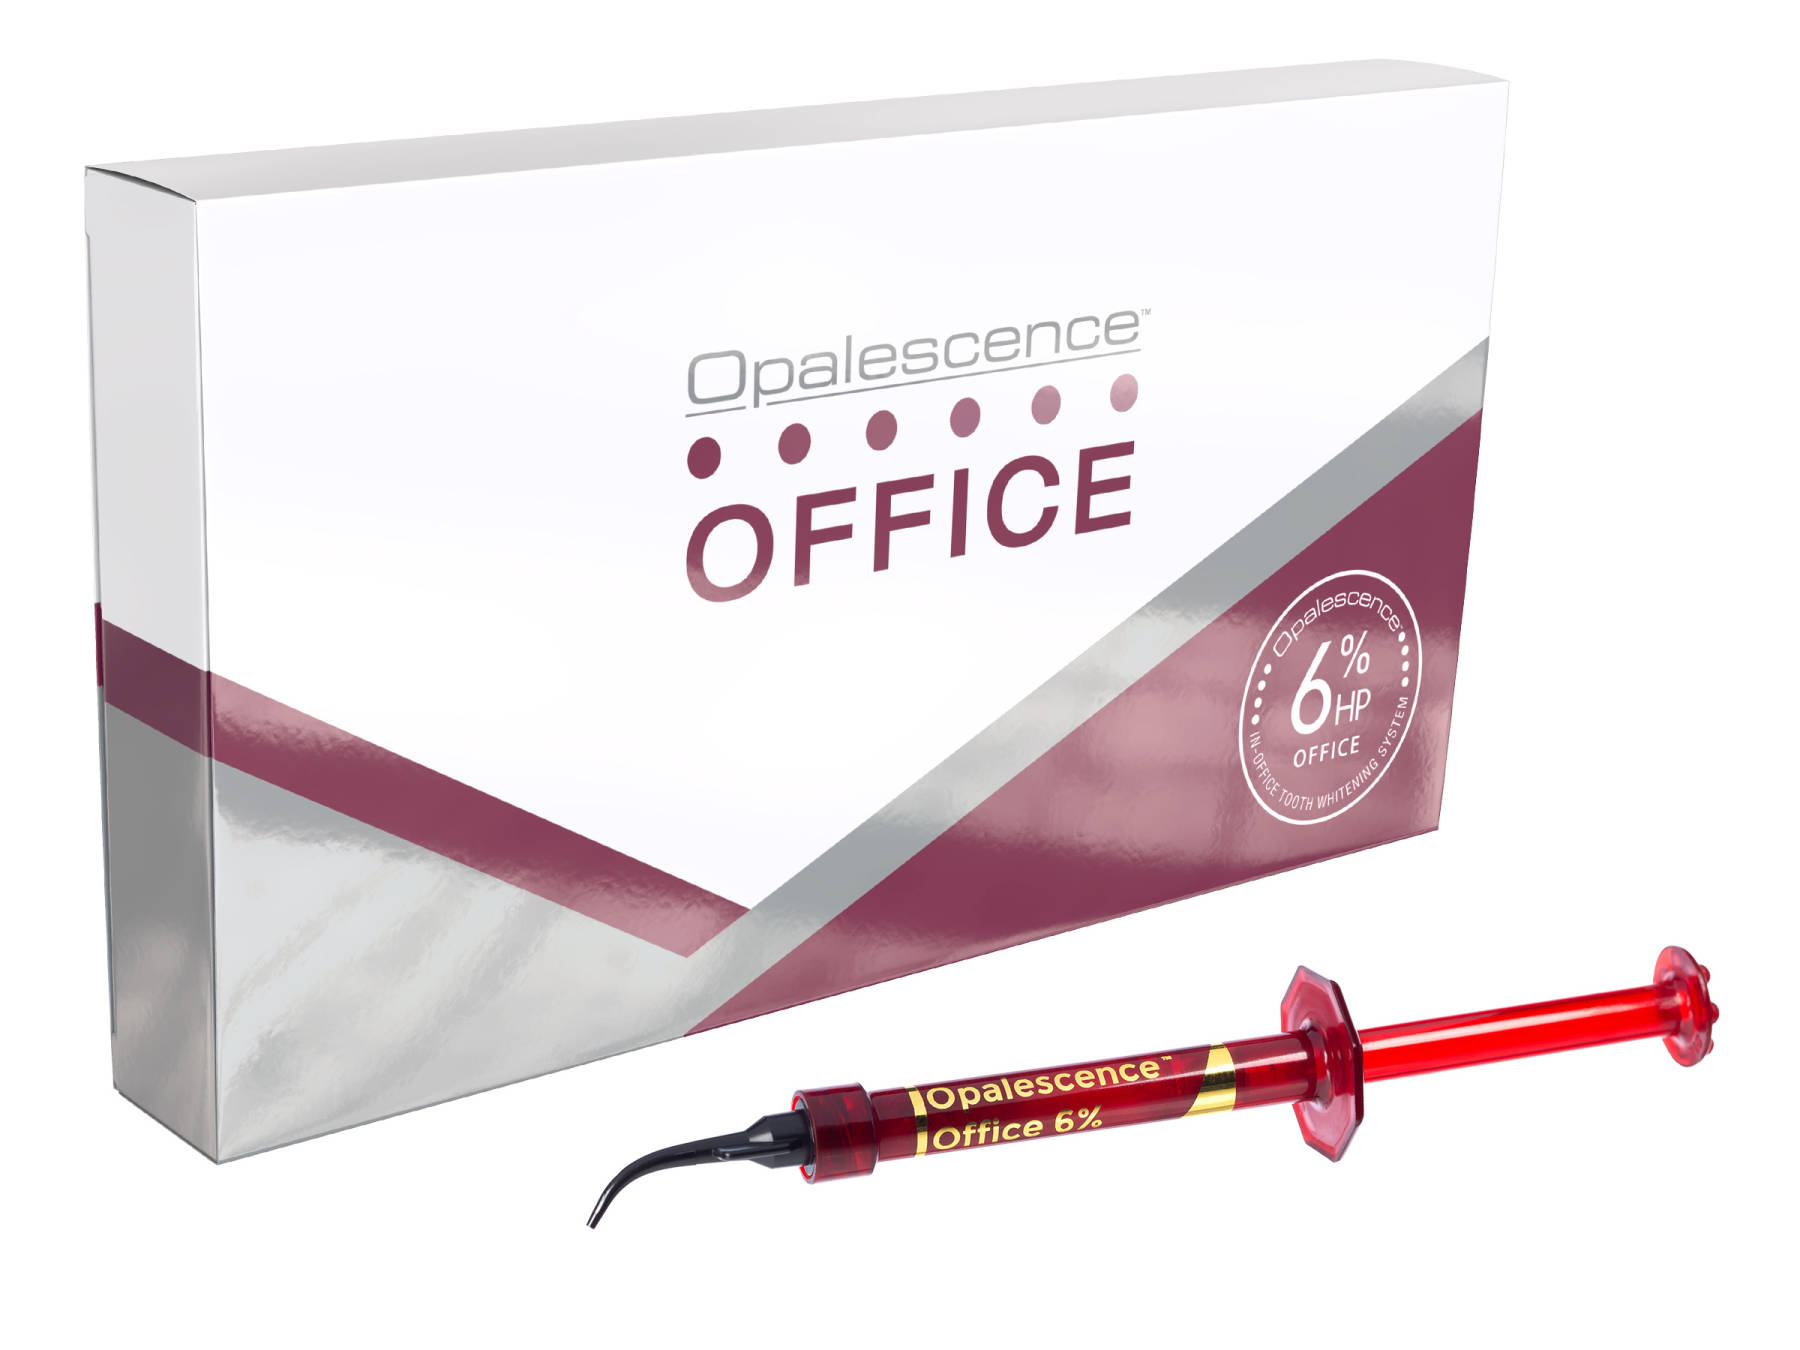 Opalescence™ Office-Cosmetic In-Office Whitening Gel